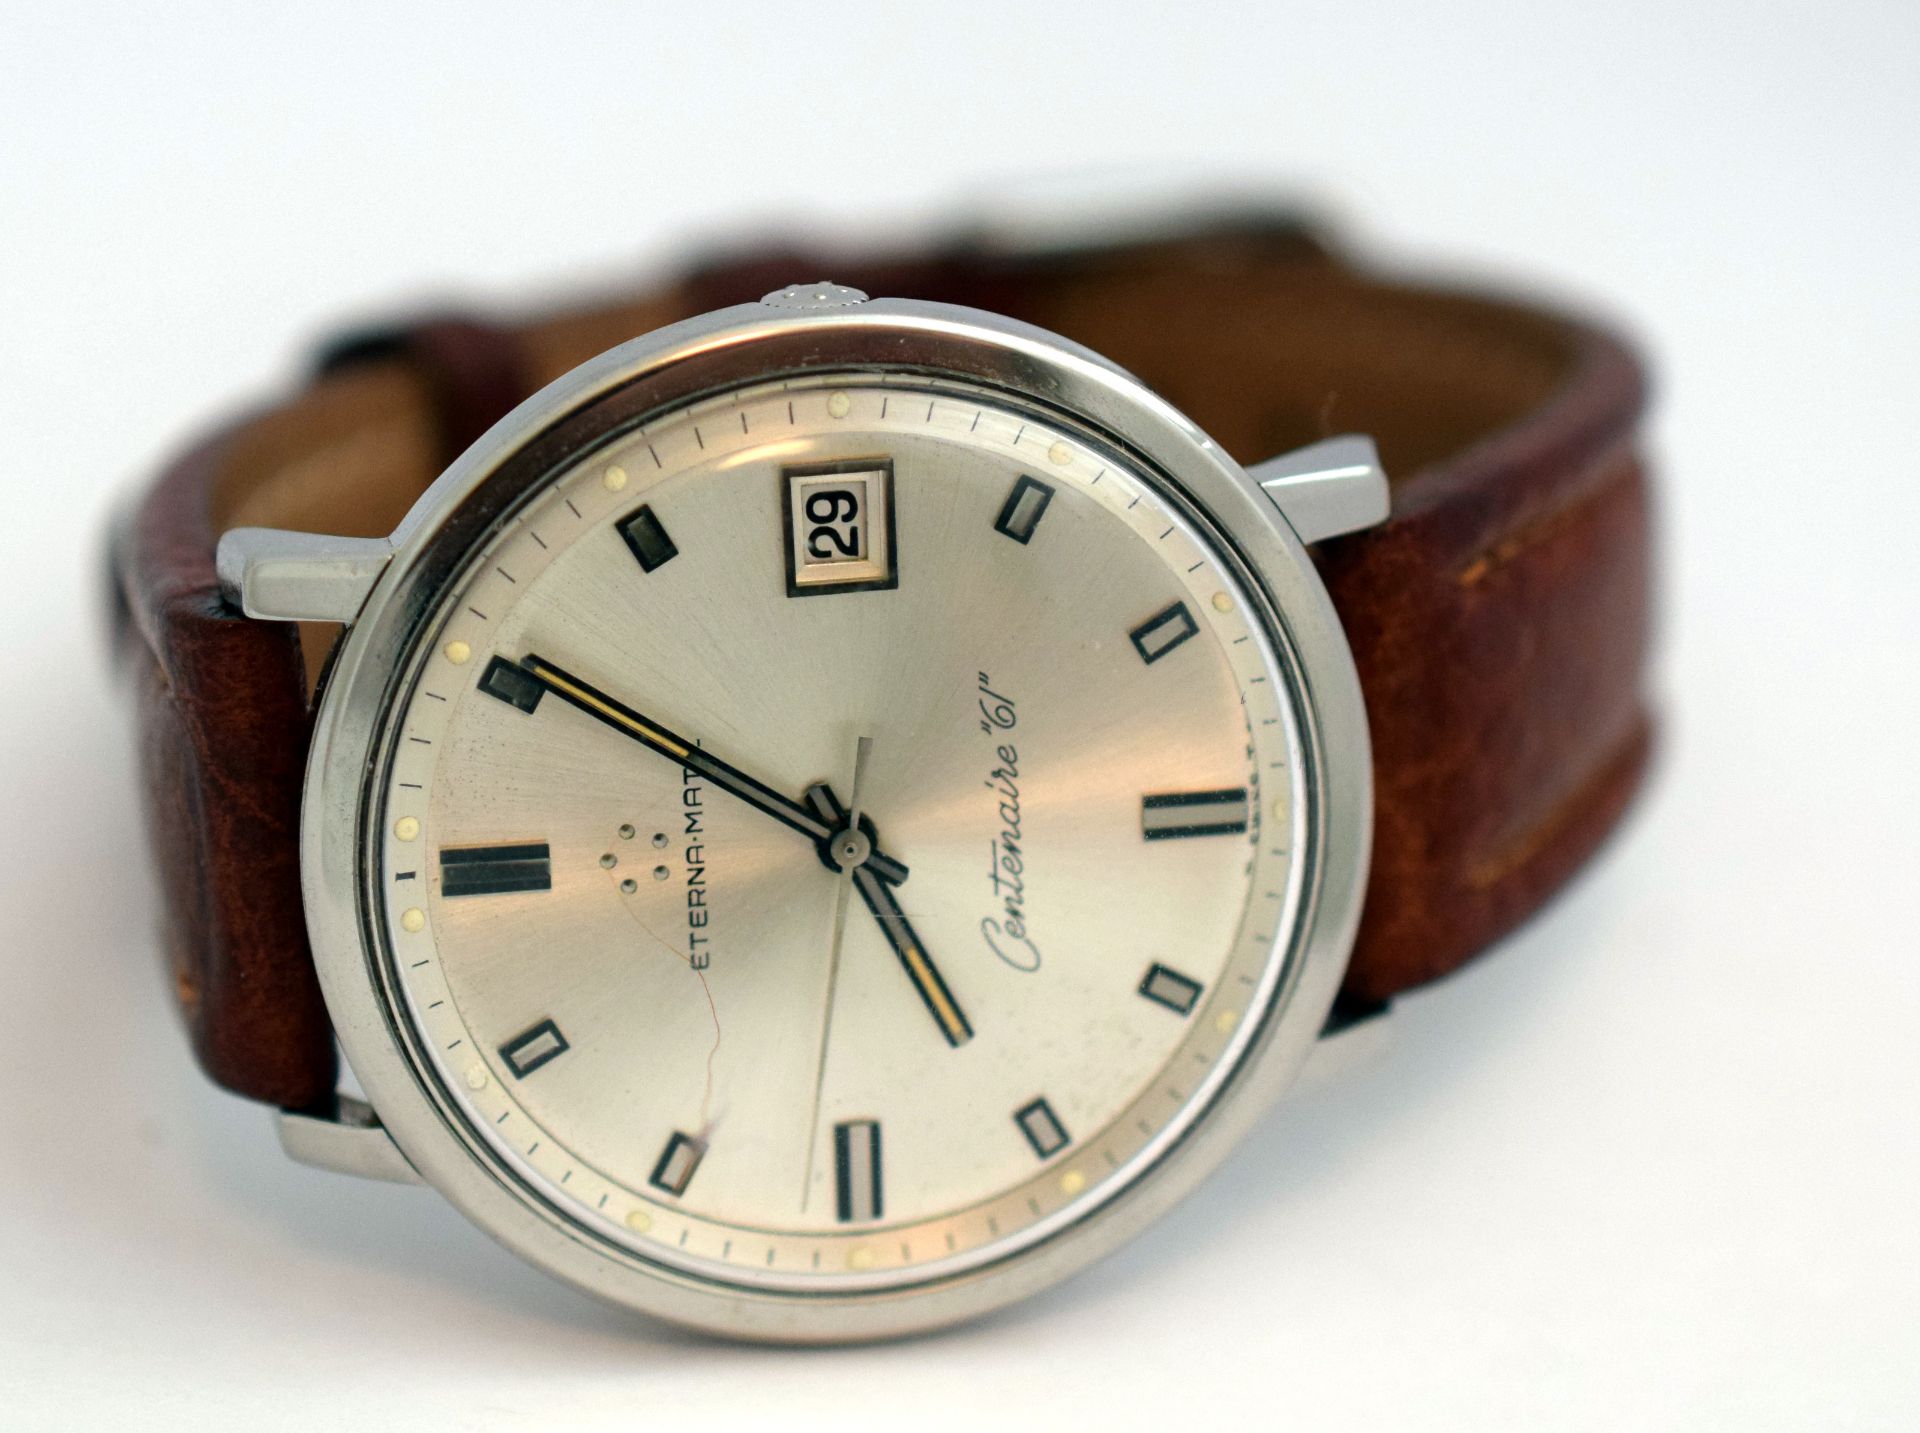 Eterna-Matic Centenaire 61 Gentleman's Wristwatch - Image 7 of 7